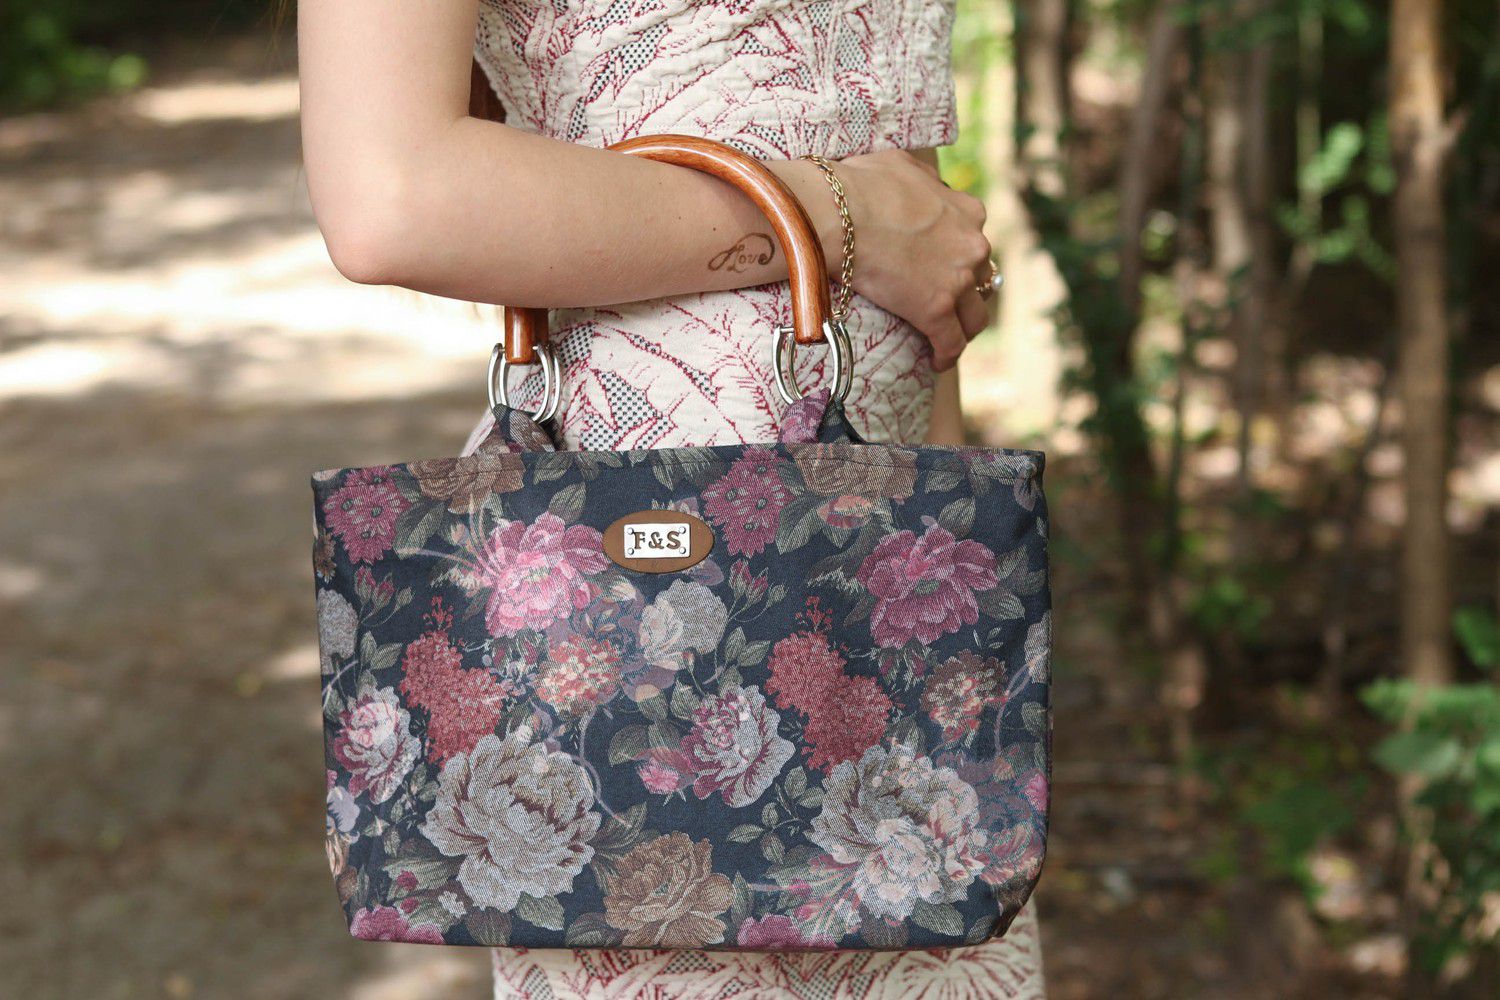 Textil Tasche mit Blumen foto 4